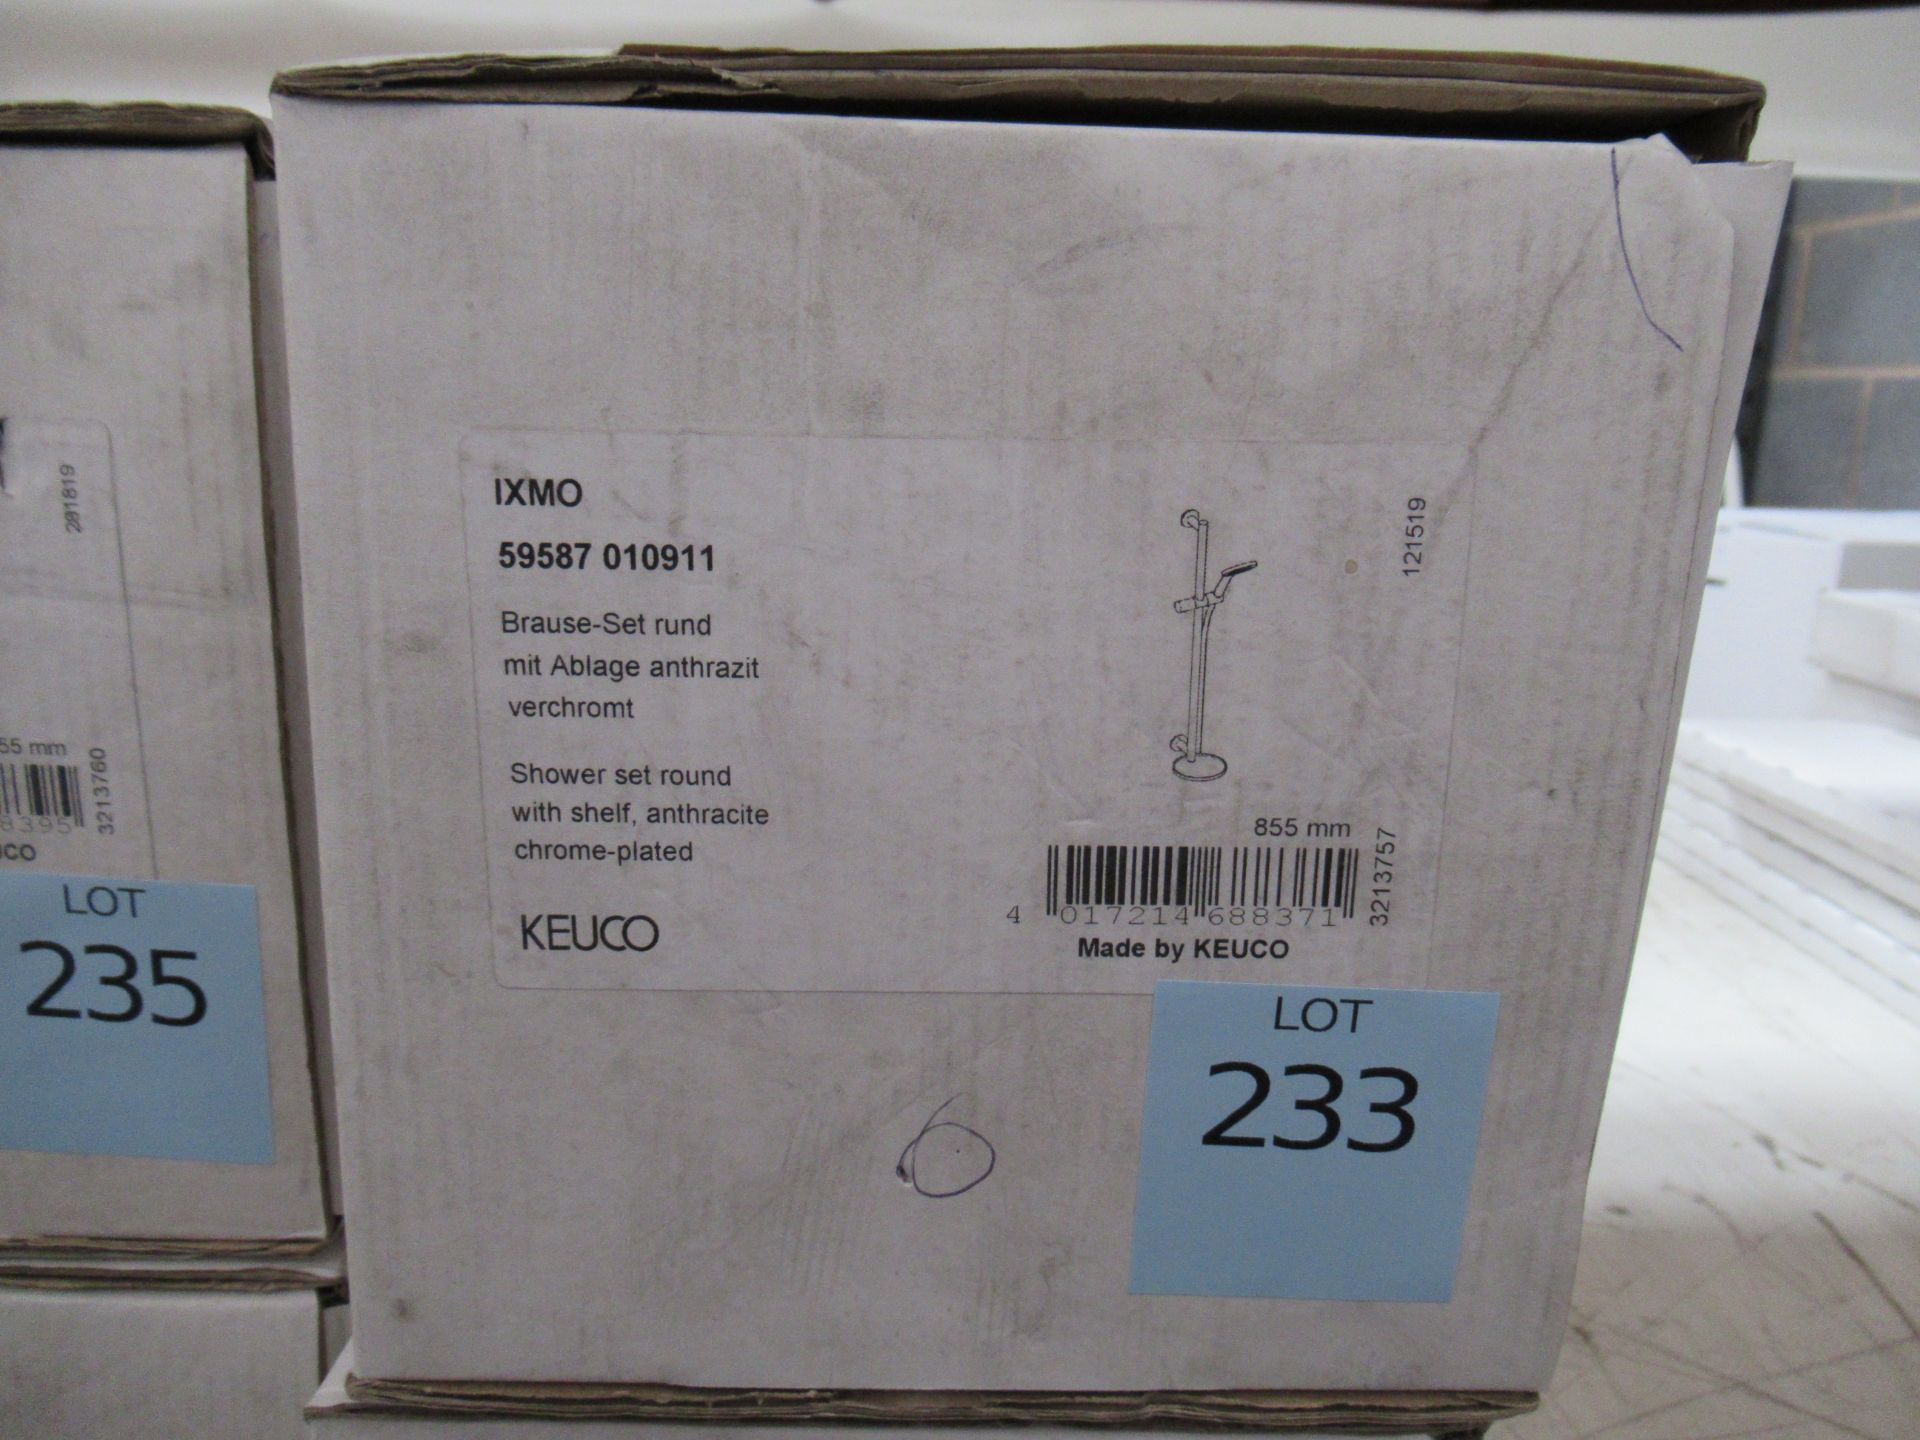 A Keuco IXMO Shower Set Round Chrome Plated, P/N 59587-010911